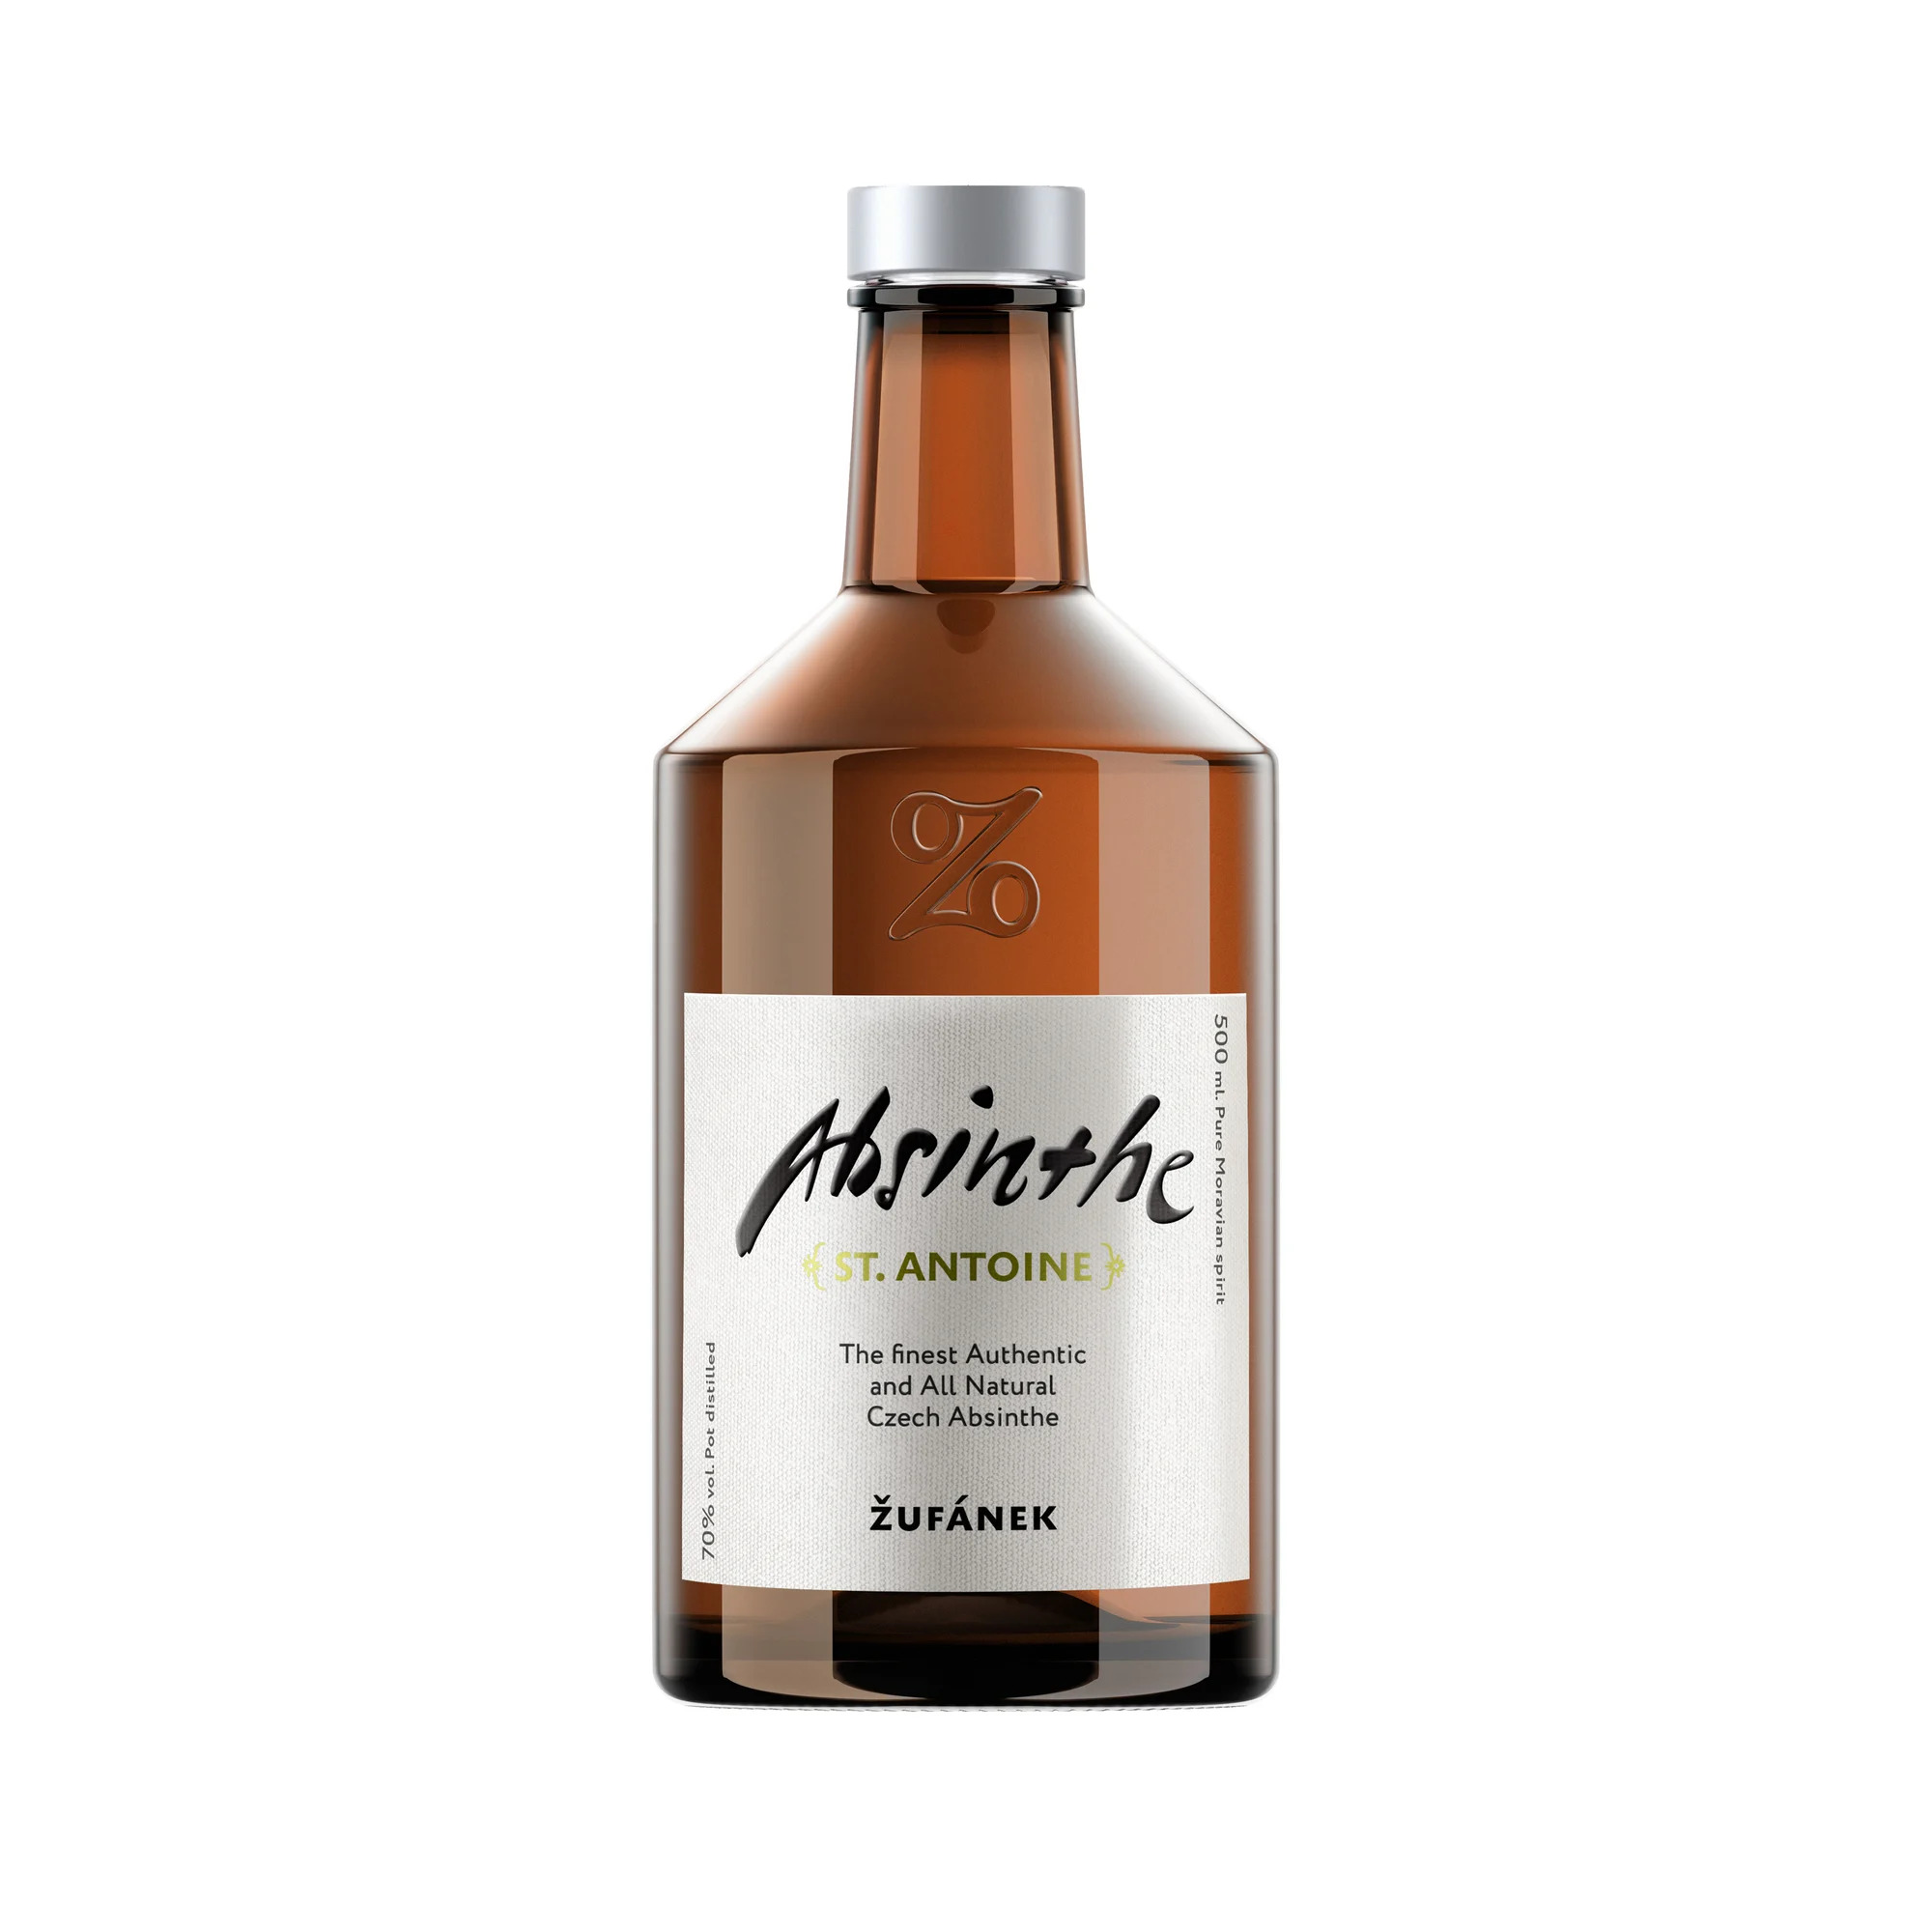 Žufánek Absinth St. Antoine 70% 0,5 l (čistá fľaša)